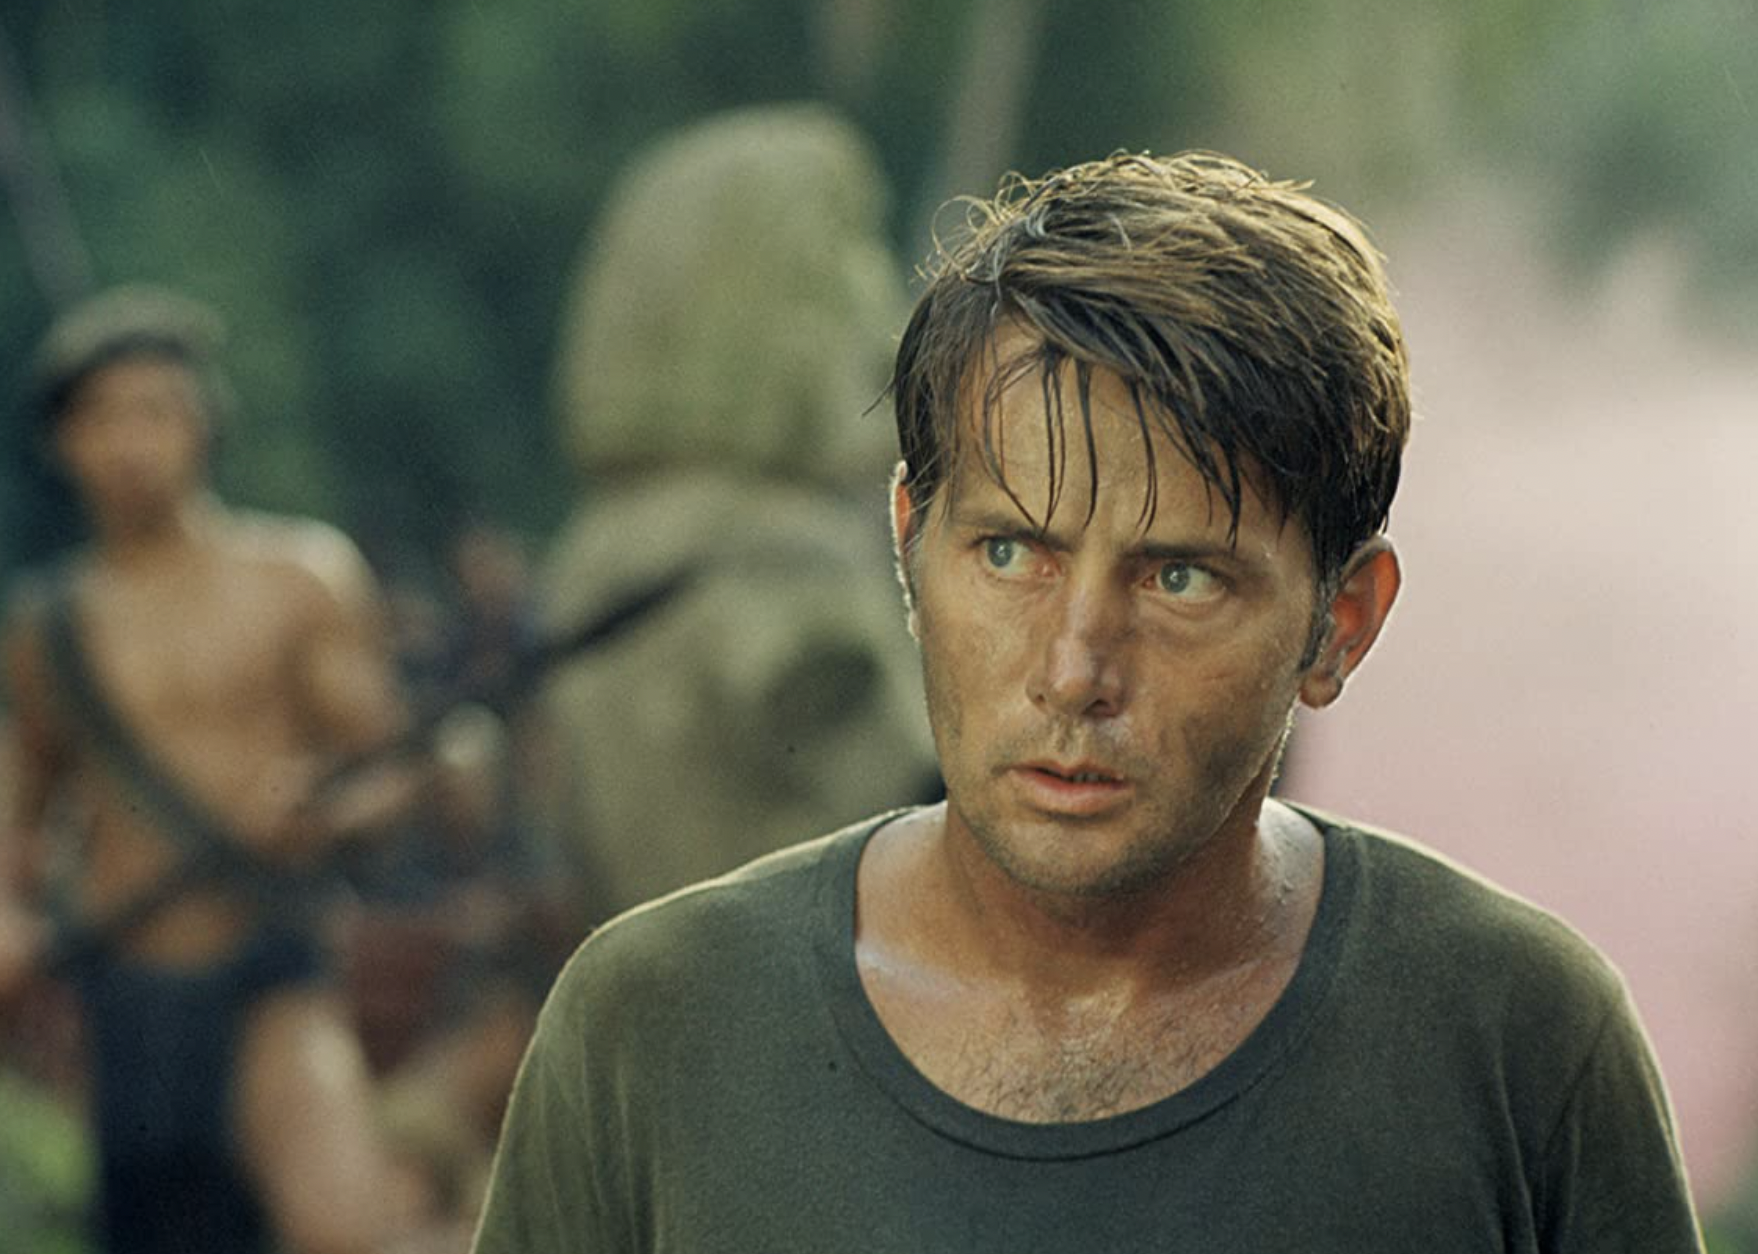 Martin Sheen in "Apocalypse Now".